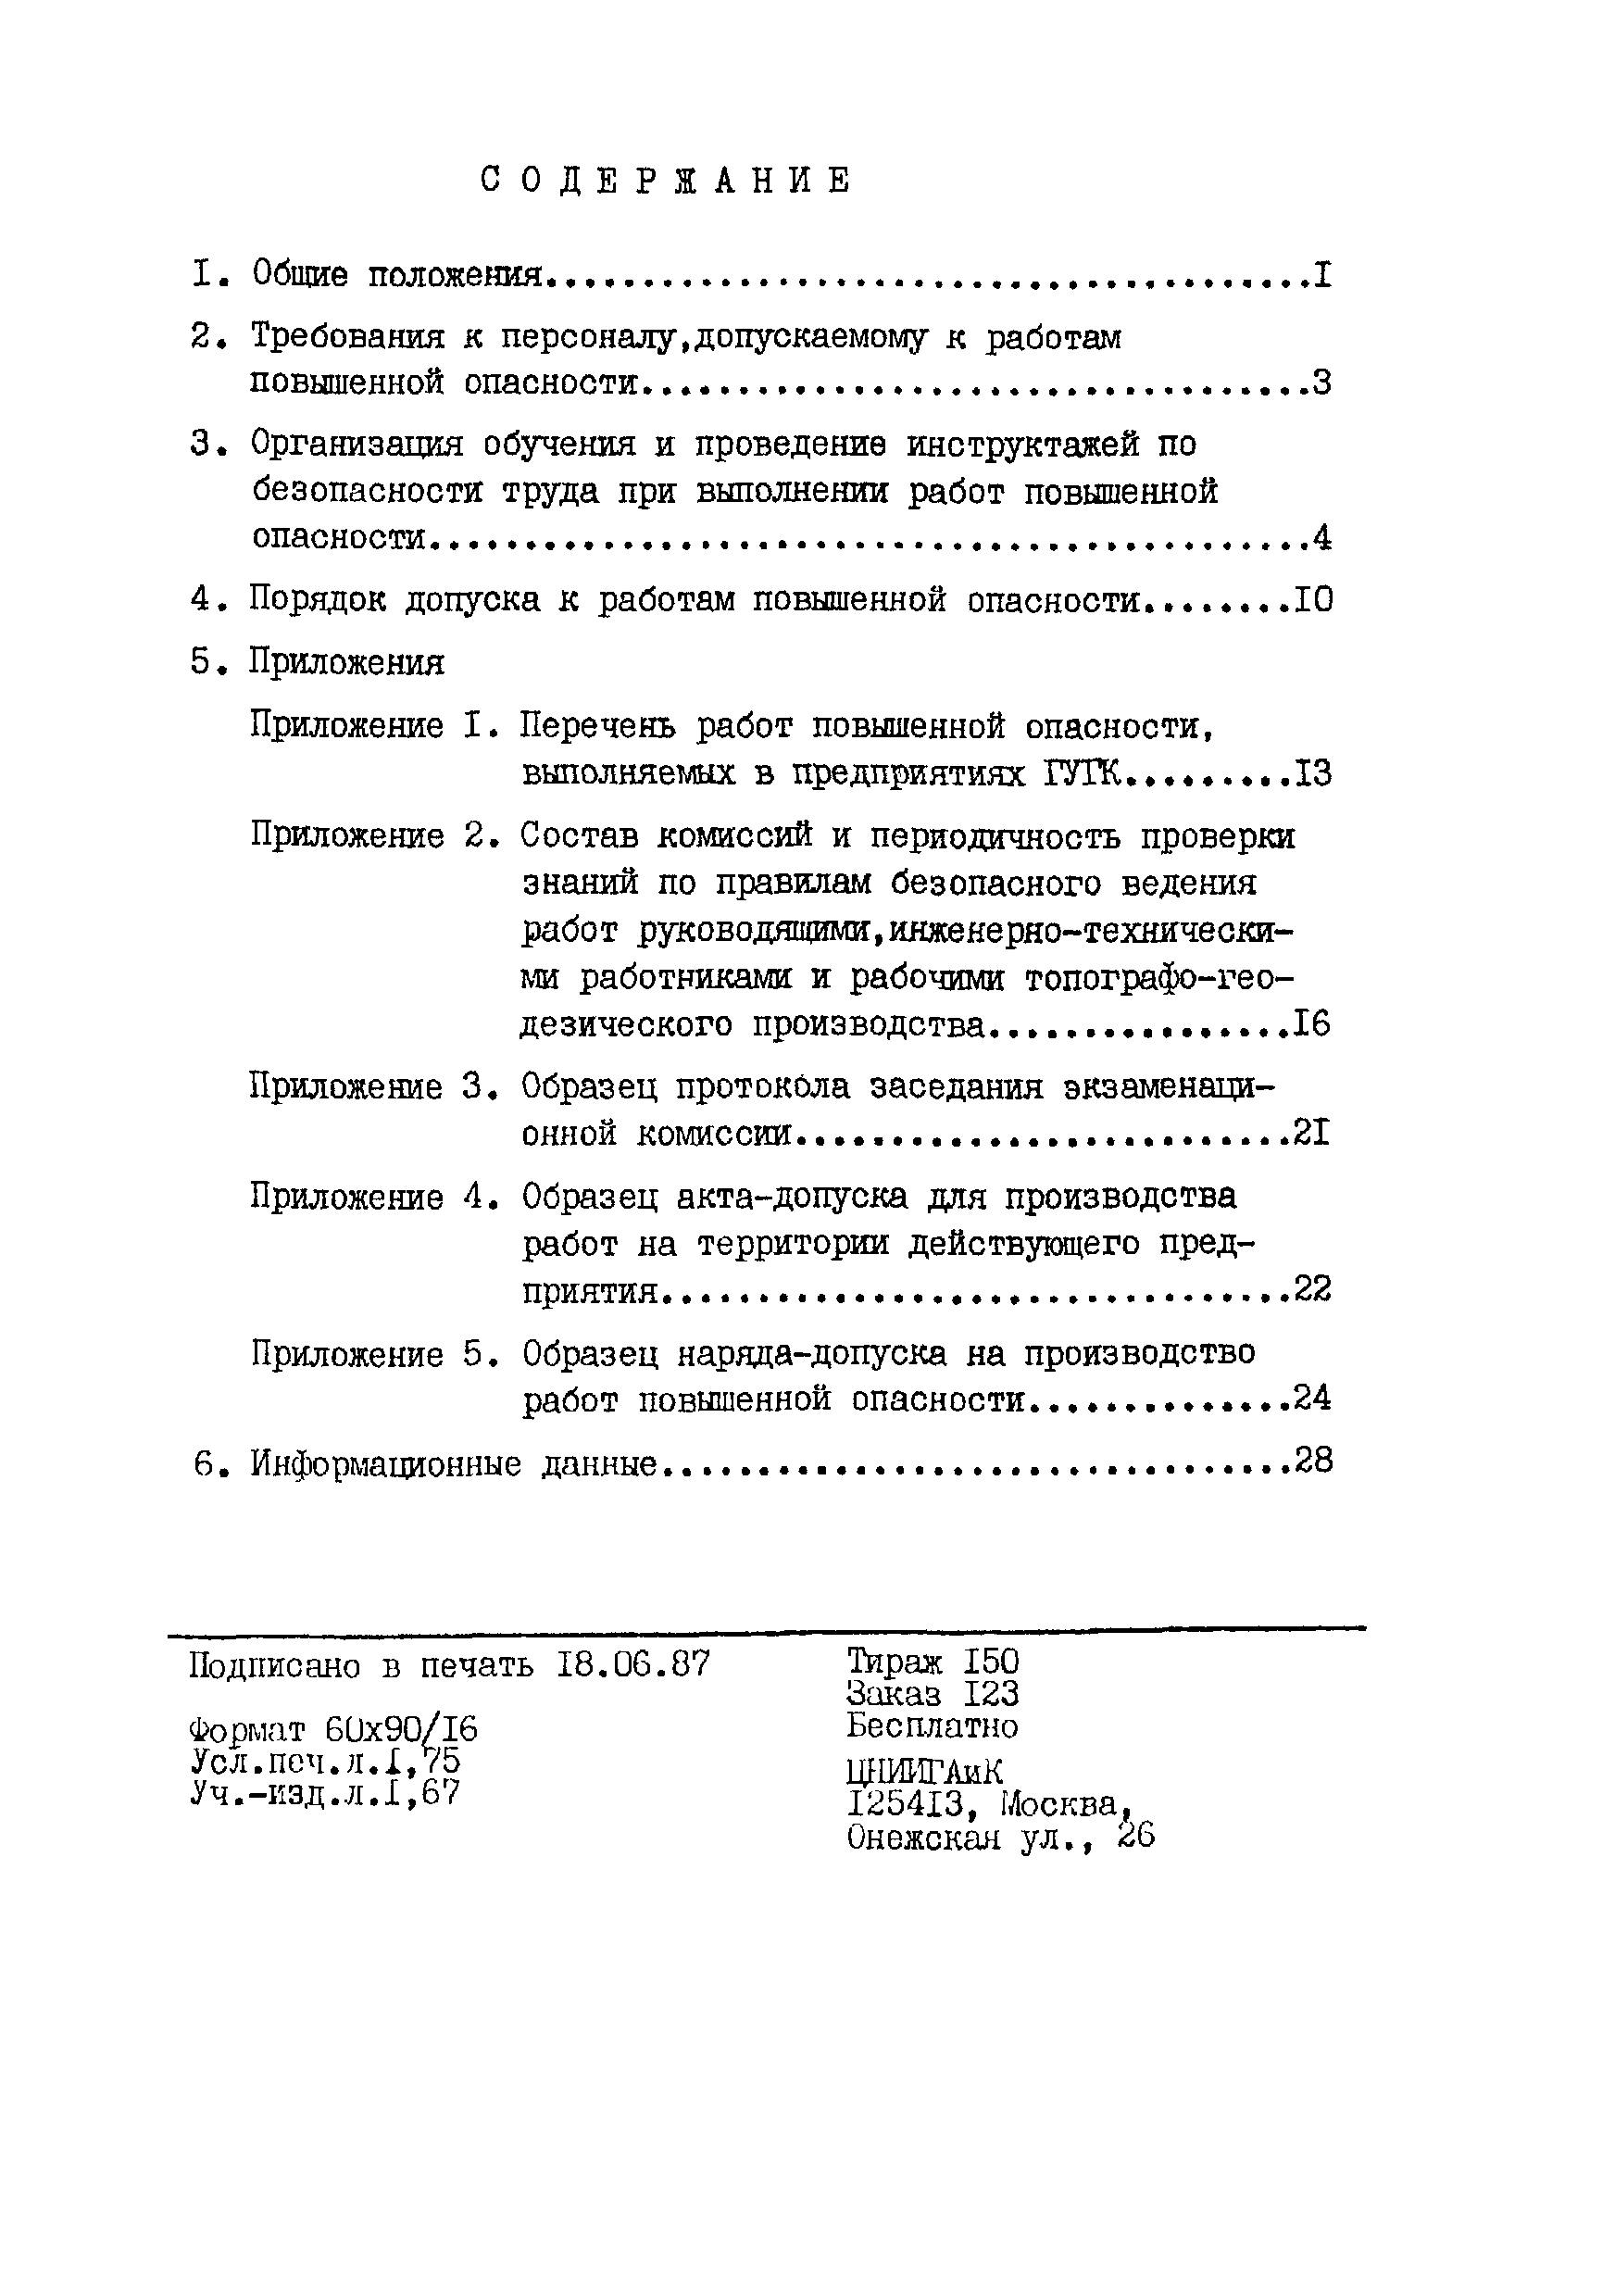 ОСТ 68-12.0.05-87